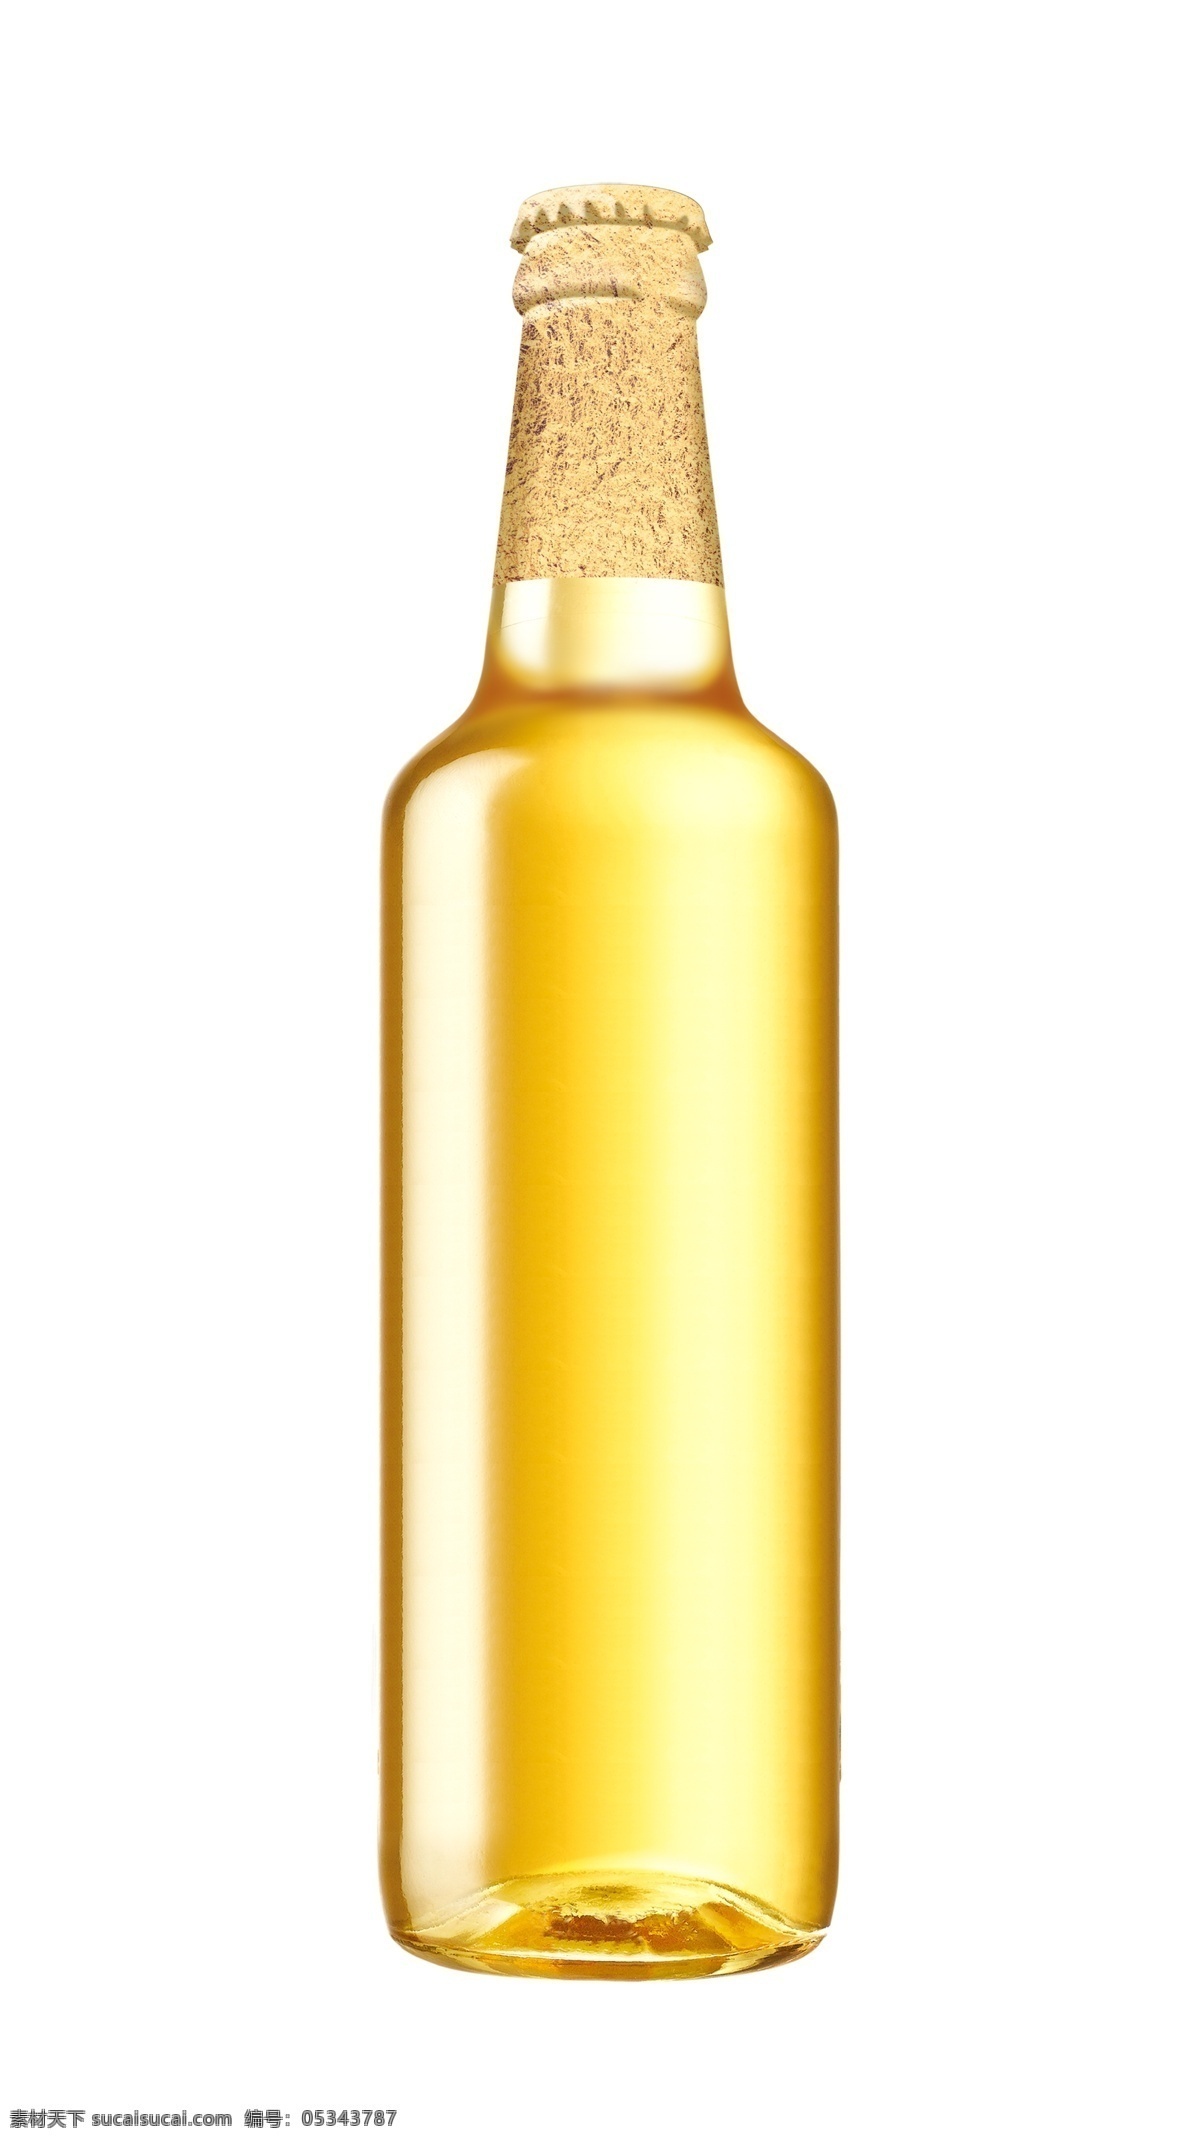 啤酒瓶 模版下载 啤酒 瓶 瓶形 黄色 效果图 白底 源文件